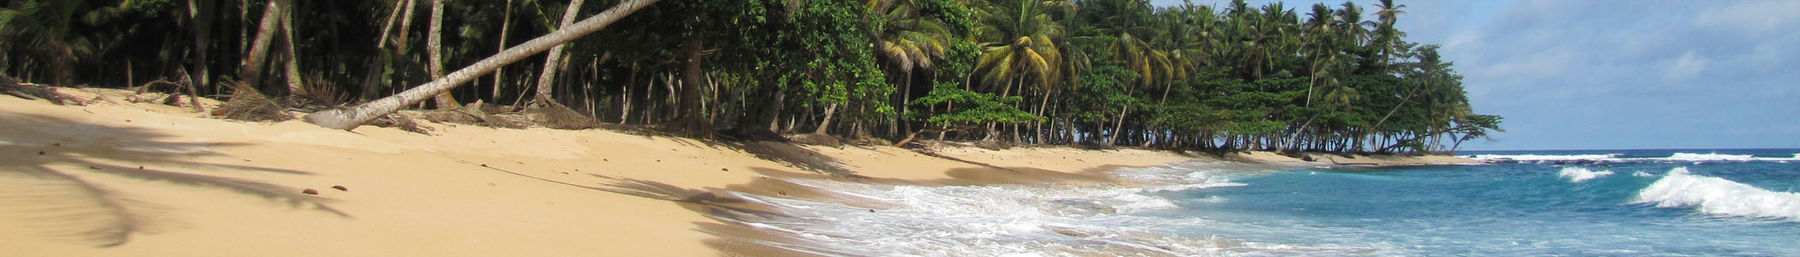 Sao Tome WV banner.jpg